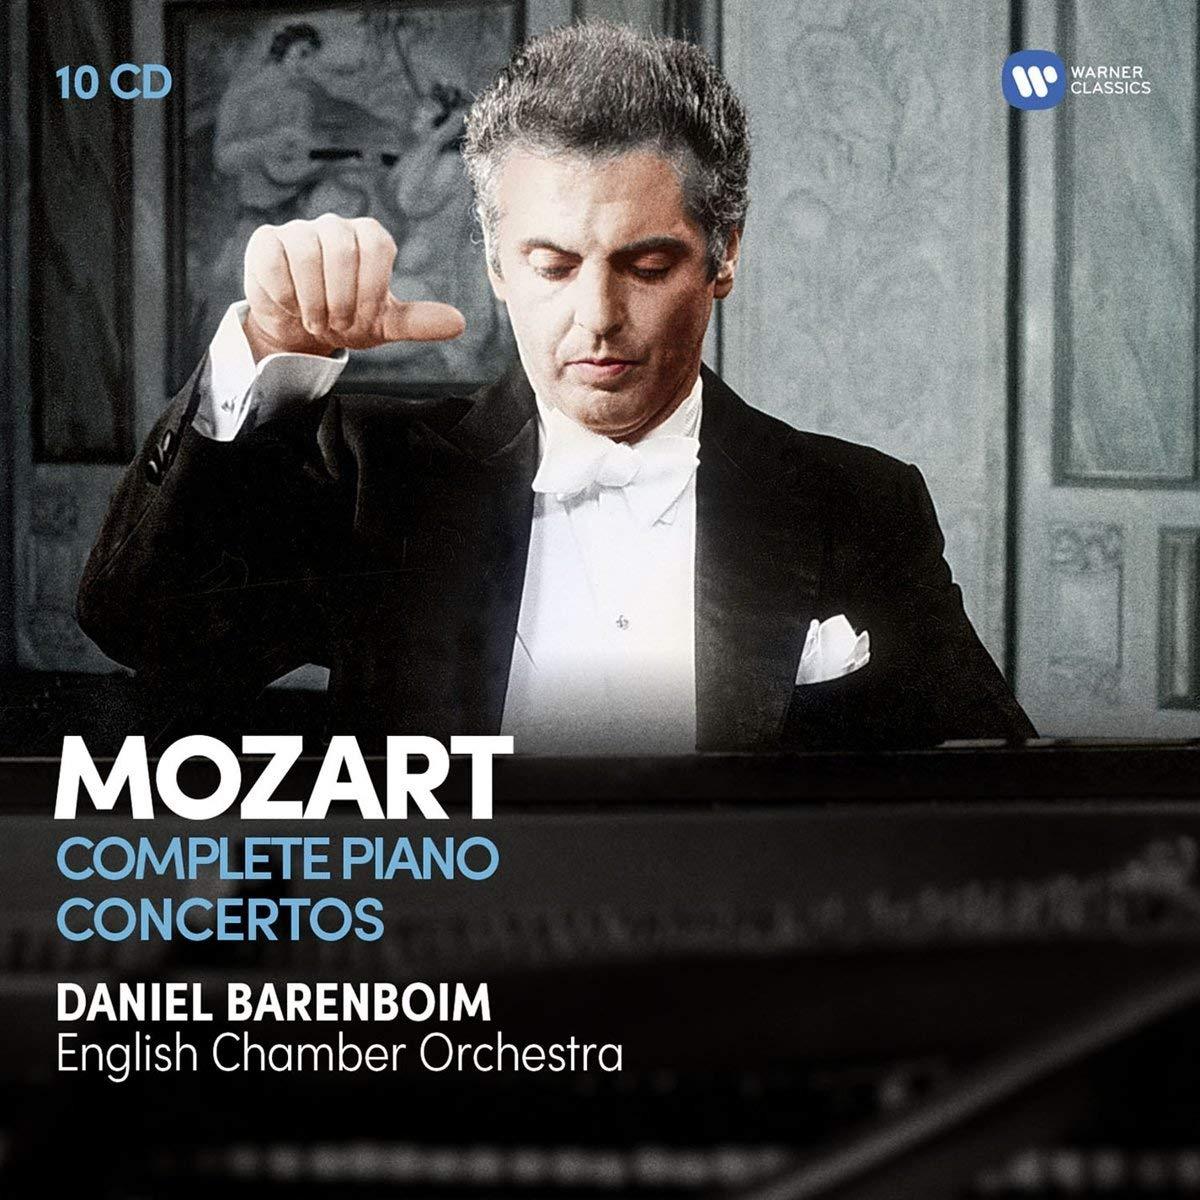 Mozart: The Complete Piano Concertos - Daniel Barenboim (10 CDs)